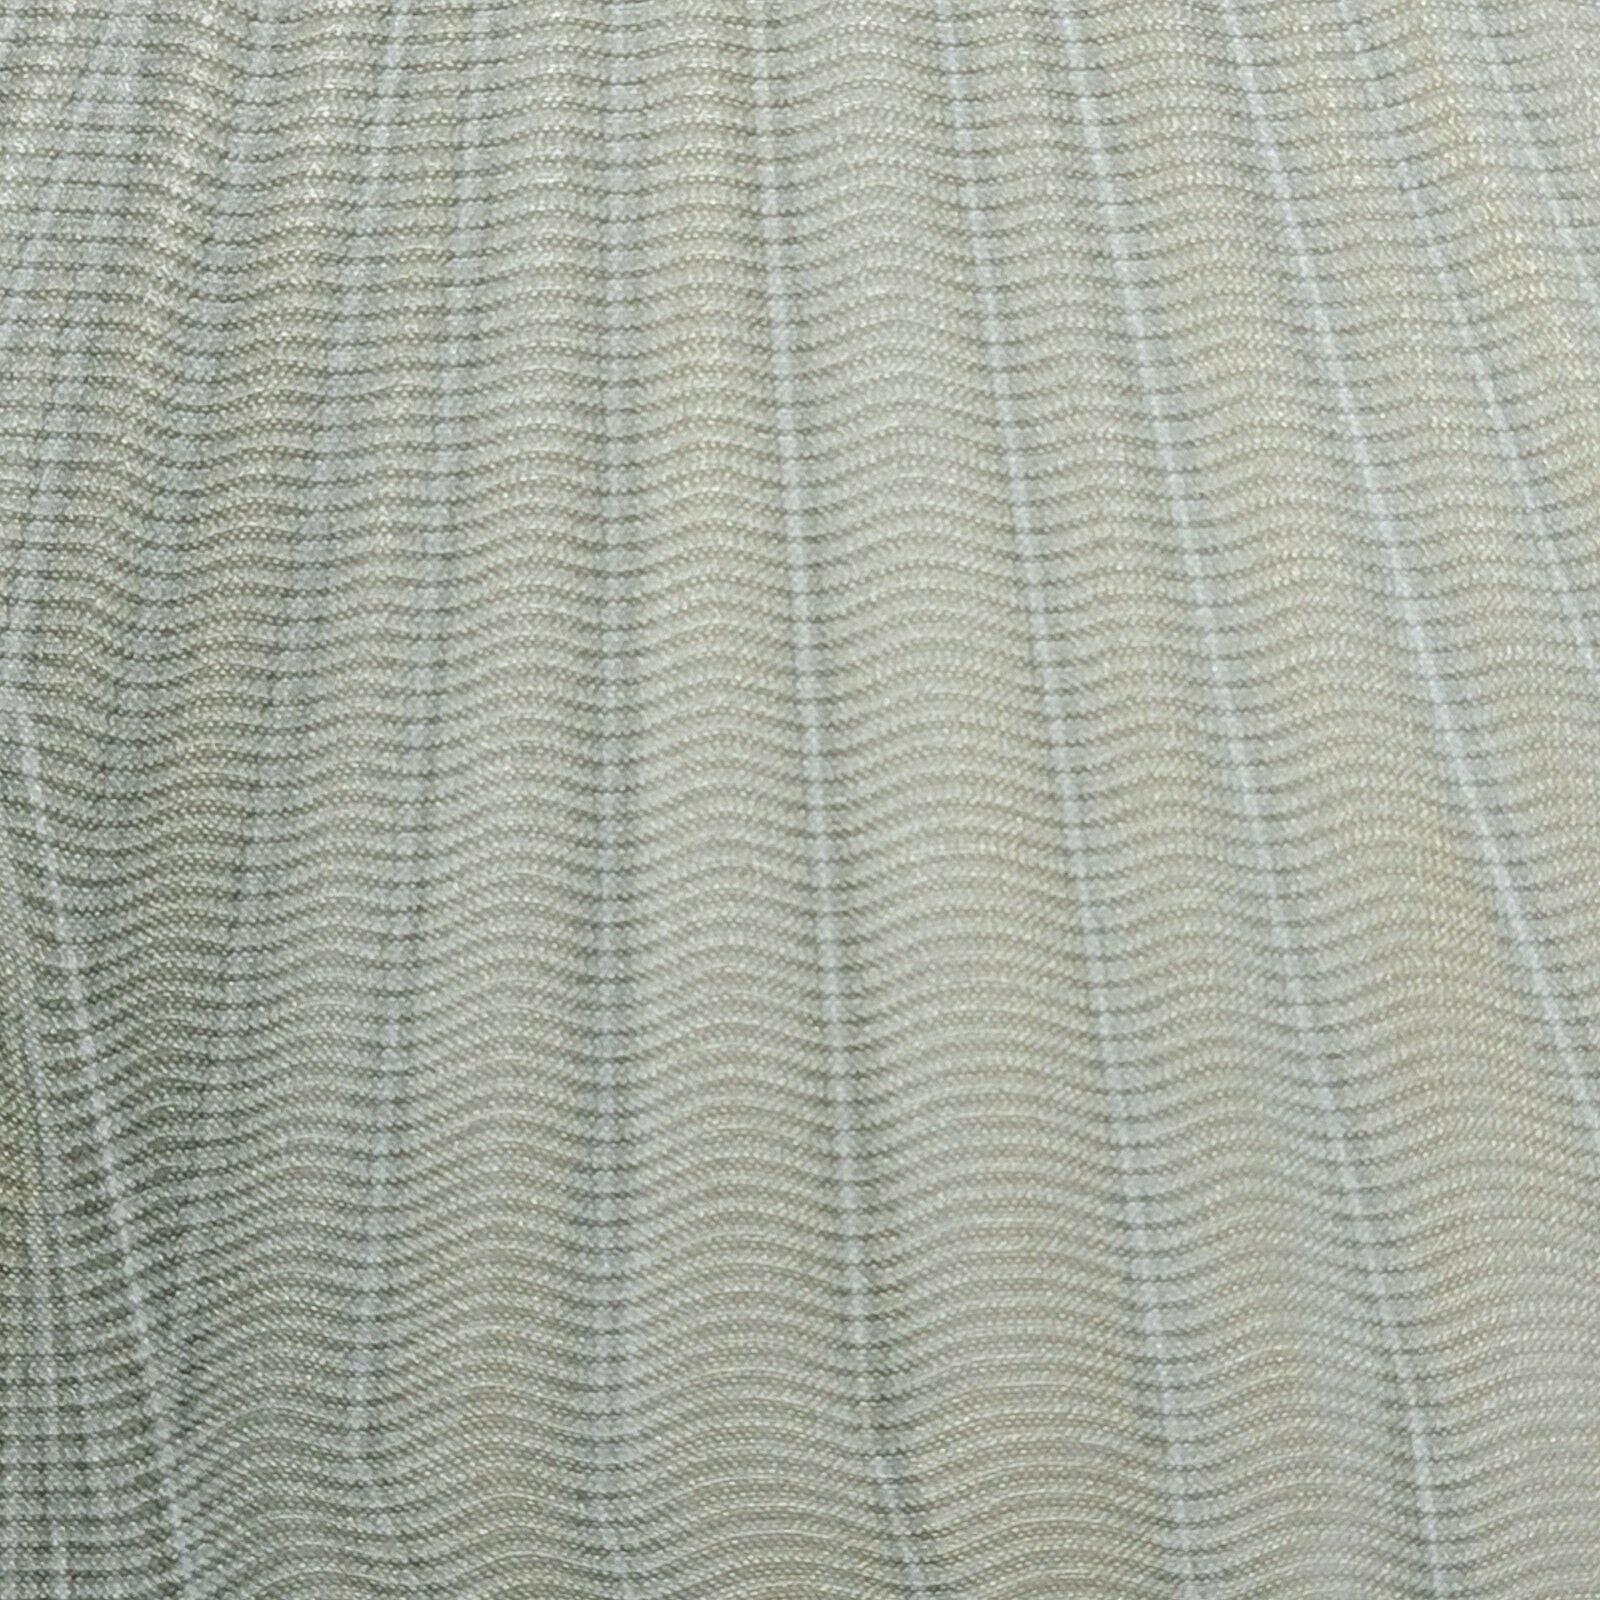 Z90054 Zambaiti Abstract wavy diamonds gray gold faux fabric 